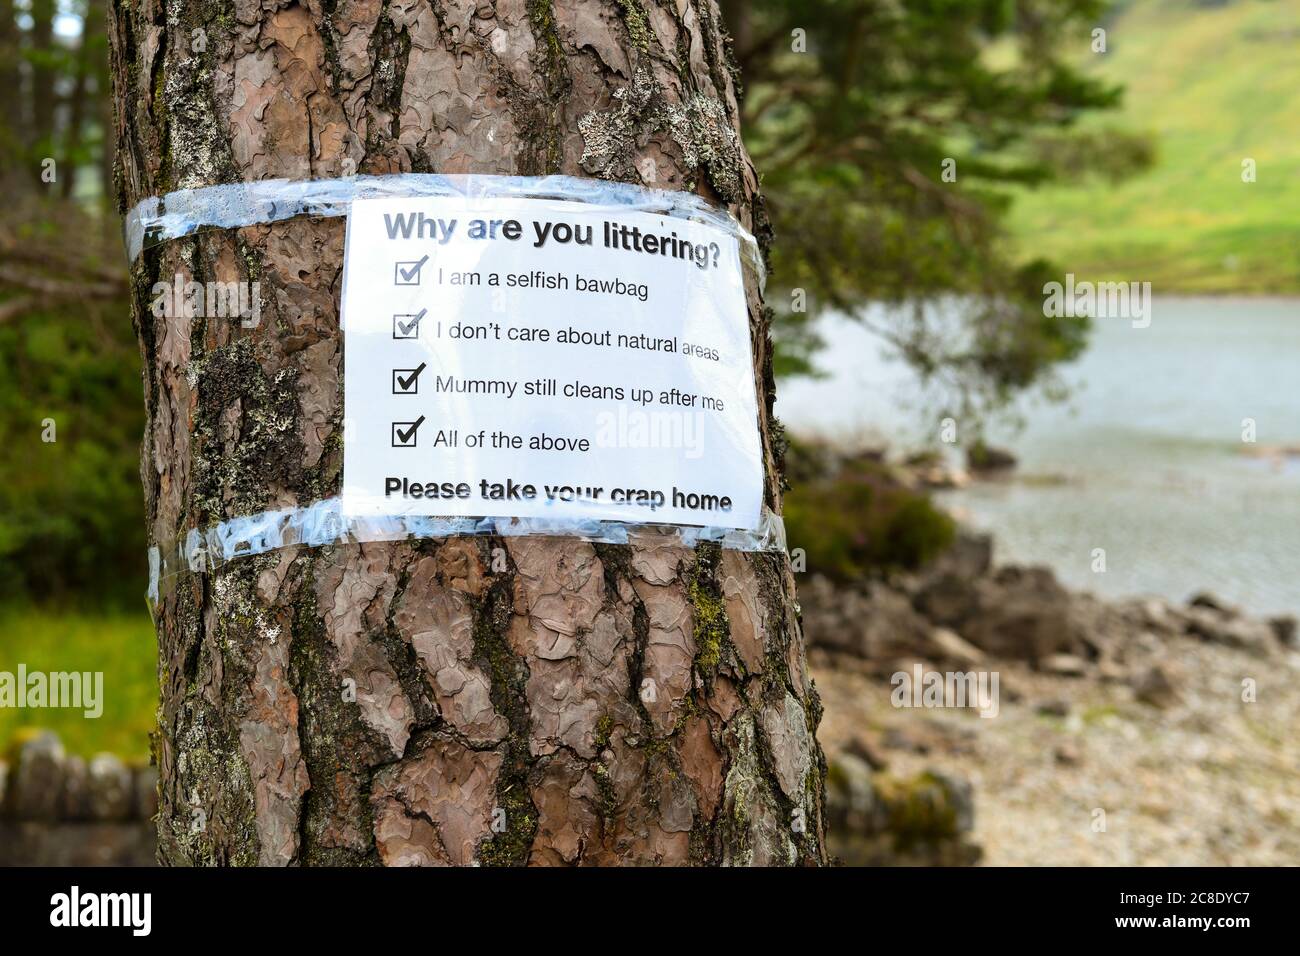 Problèmes de litière problème constant au Loch Lomond et dans le parc national des Trossachs pendant la pandémie du coronavirus - signe par Loch Chon demandant pourquoi - Écosse Banque D'Images